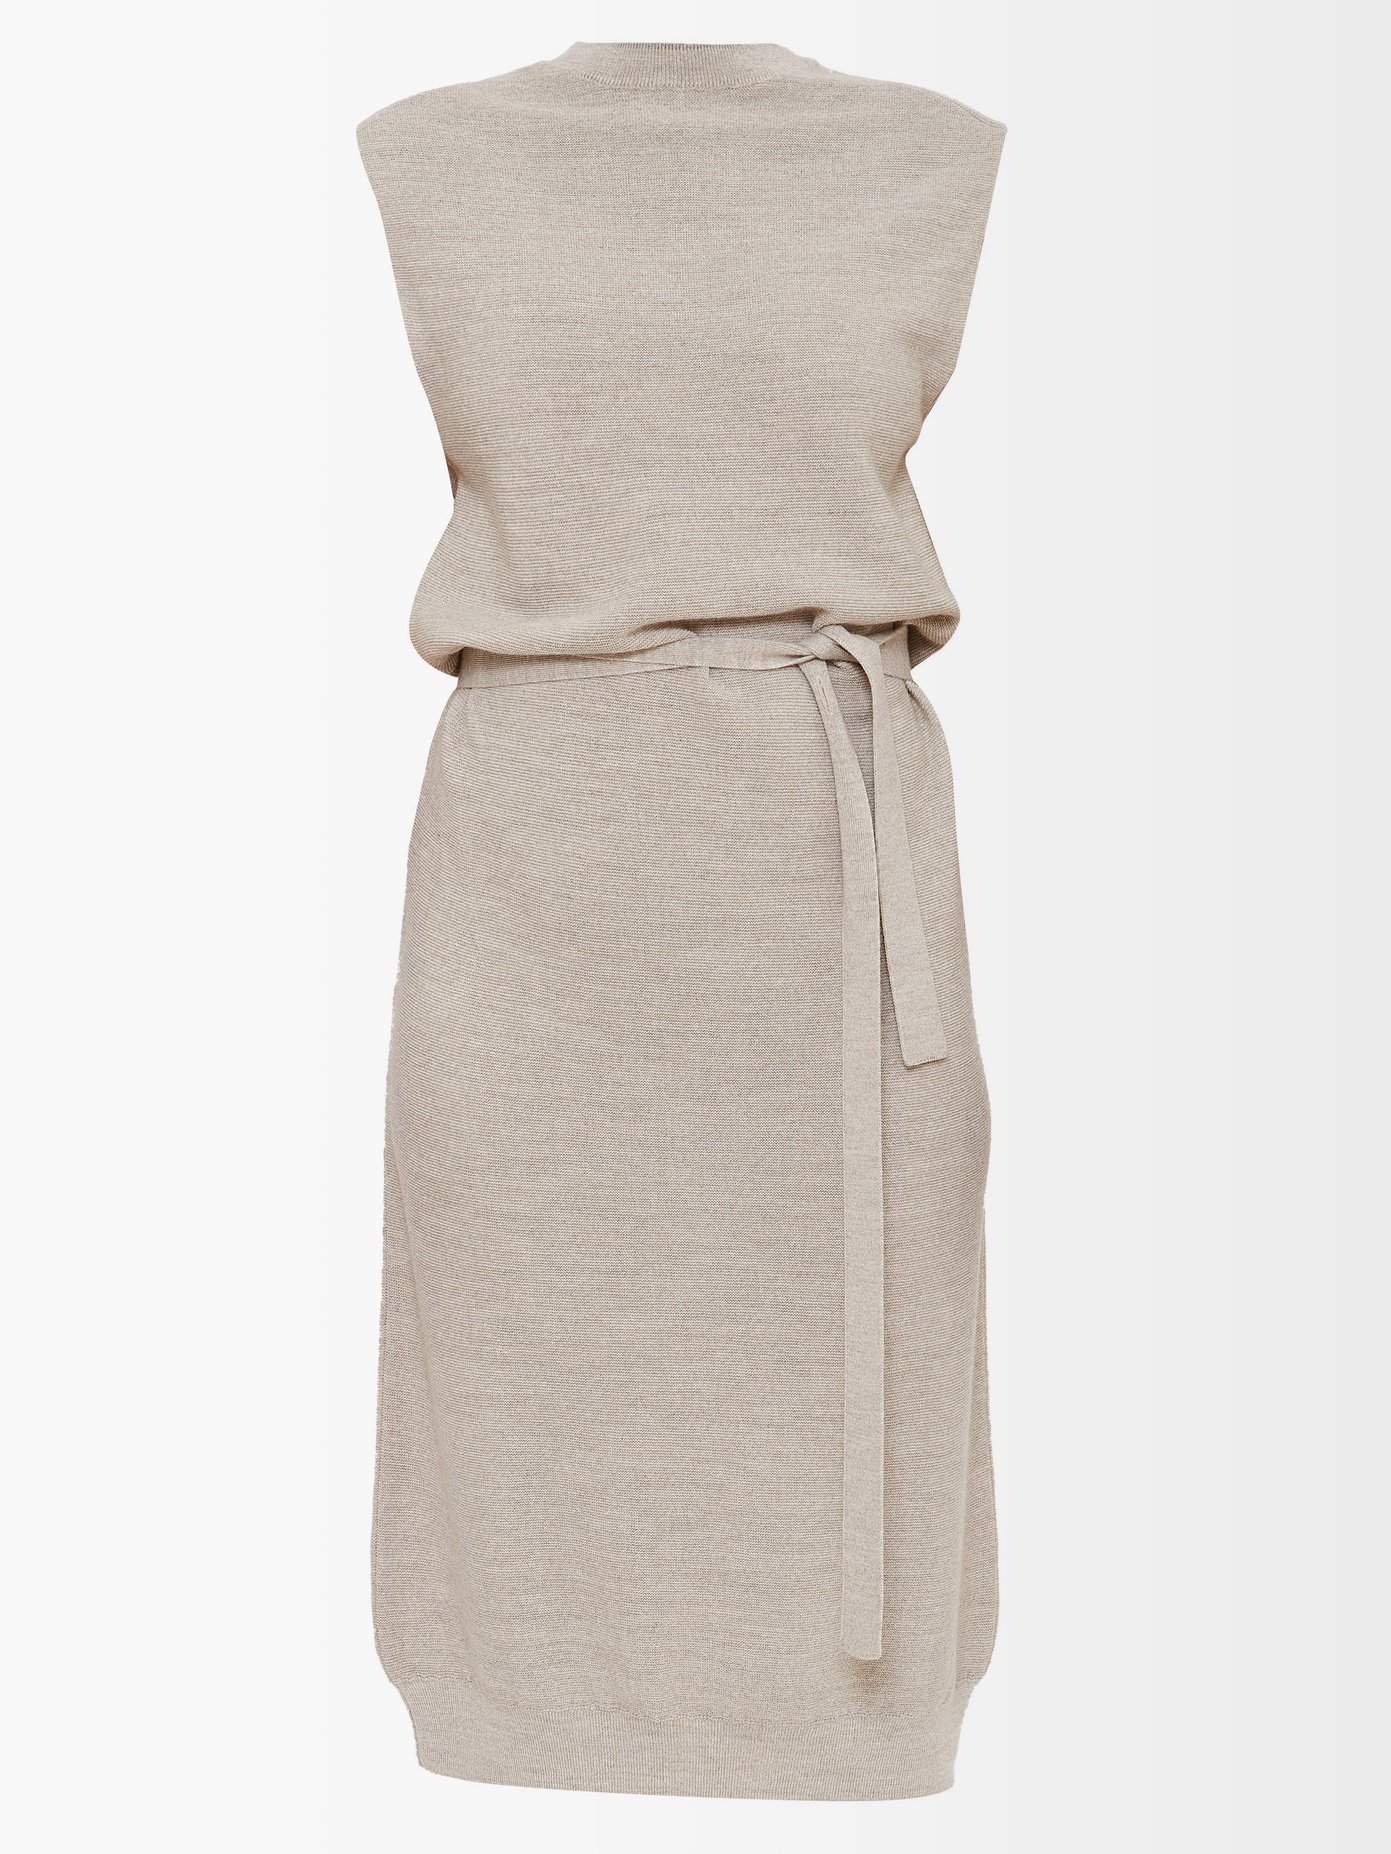 르메르 타이 웨이스트 민소매 원피스 Lemaire Grey Tie-waist sleeveless dress